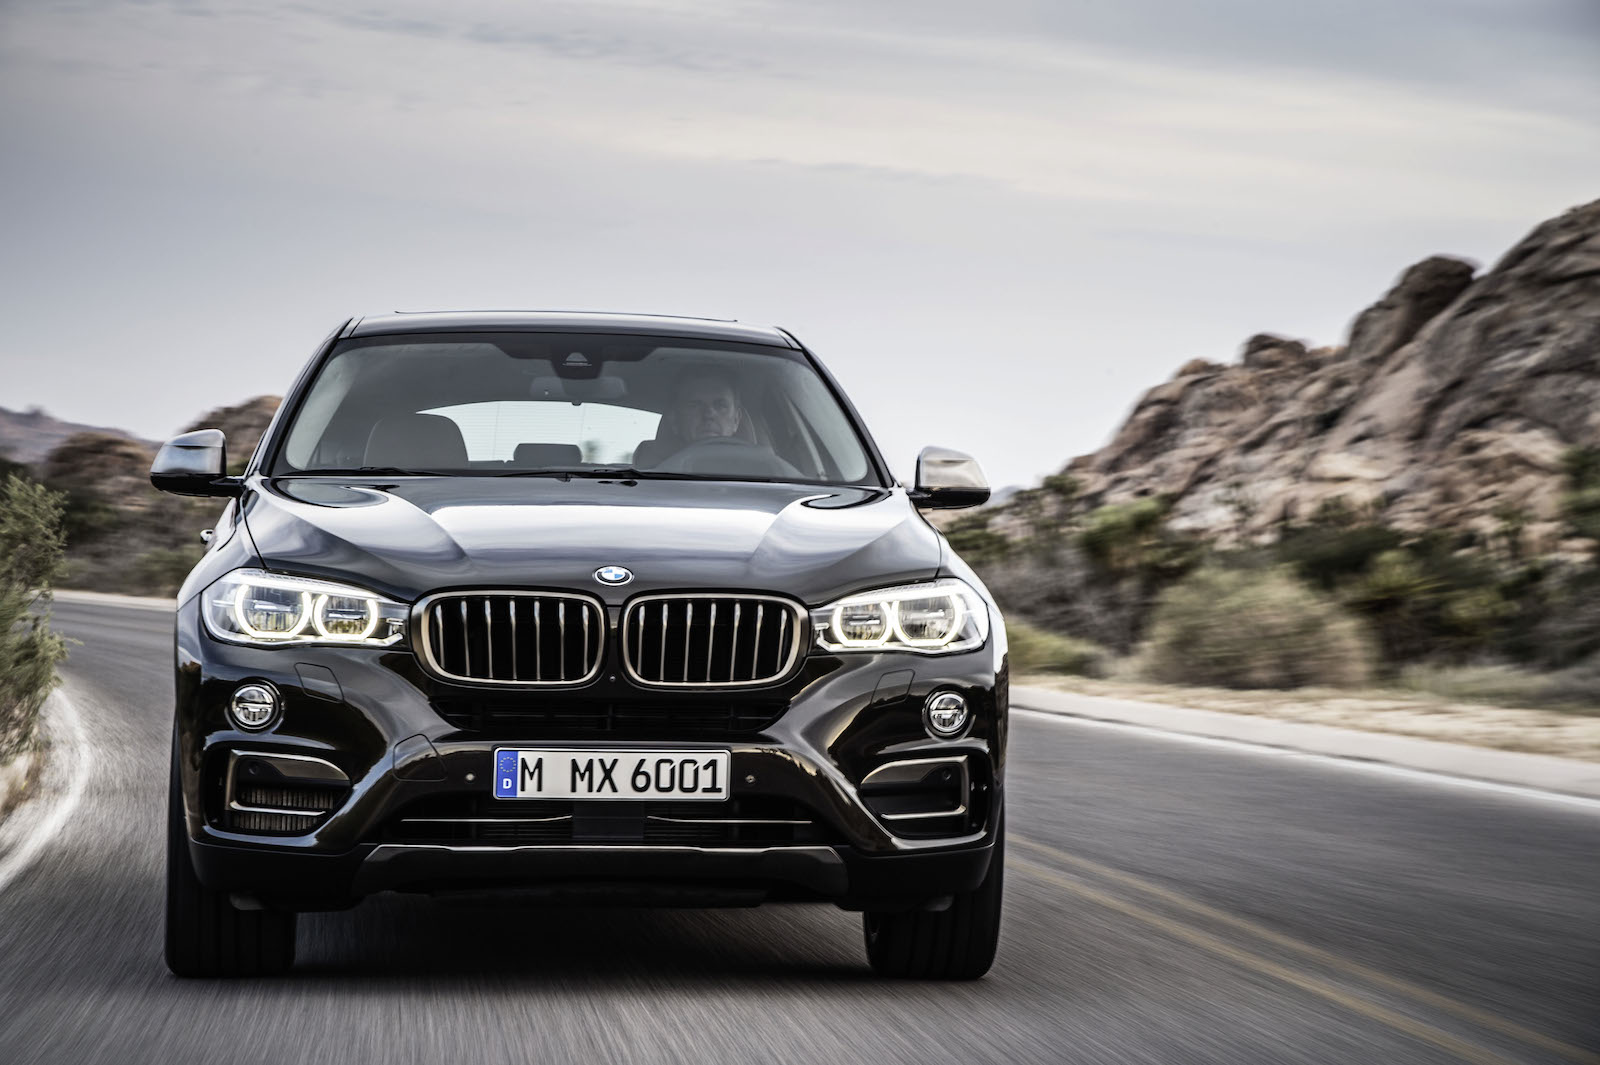 Giá của BMW X6 được nhà sản xuất chính thức công bố ngày hôm qua 